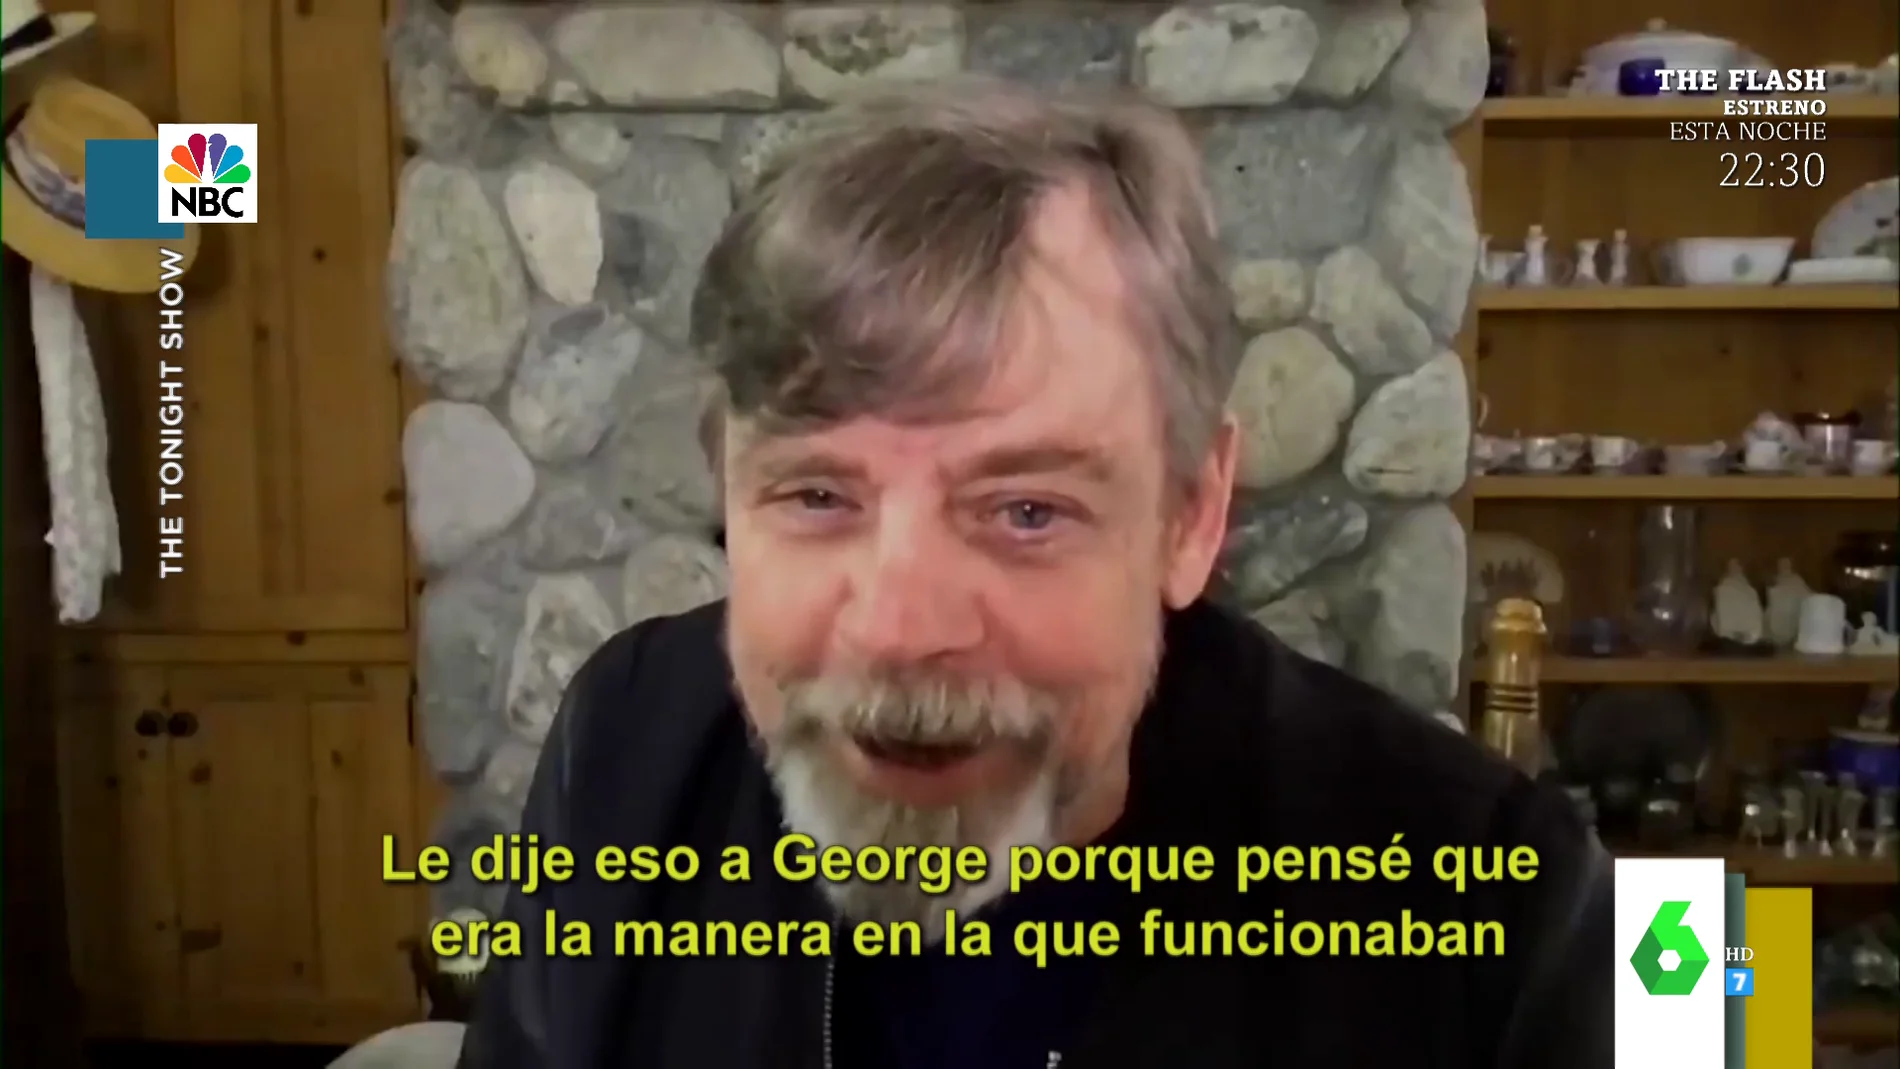 La propuesta que Mark Hamill hizo a George Lucas y que hubiera cambiado drásticamente la historia de Star Wars